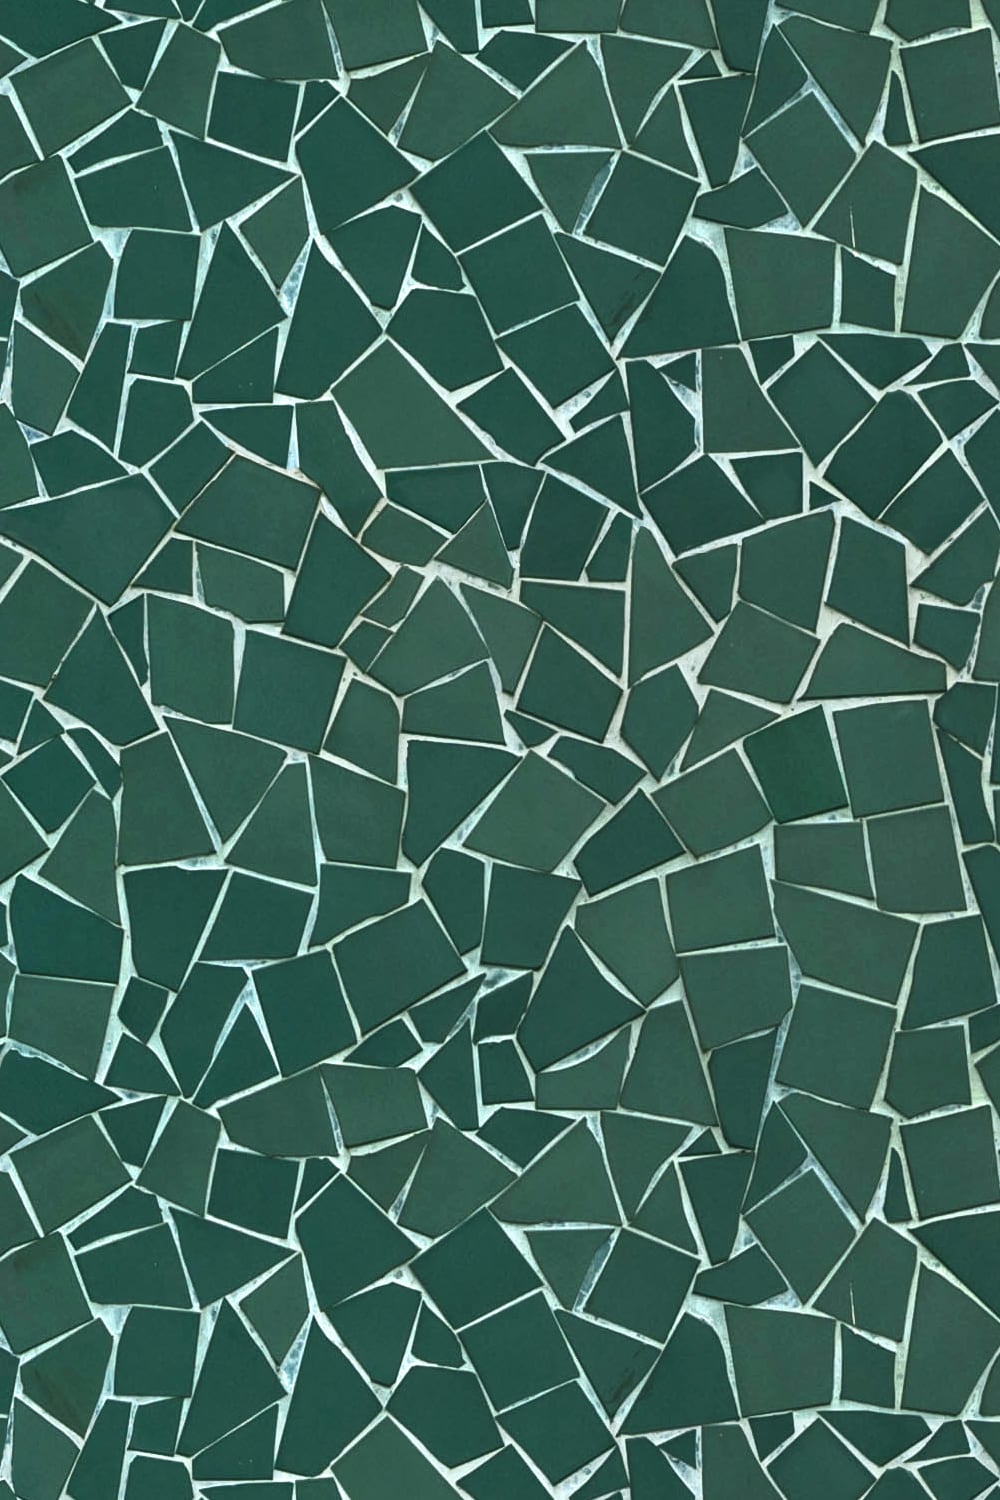 Shattered green mosaic wall - close-up